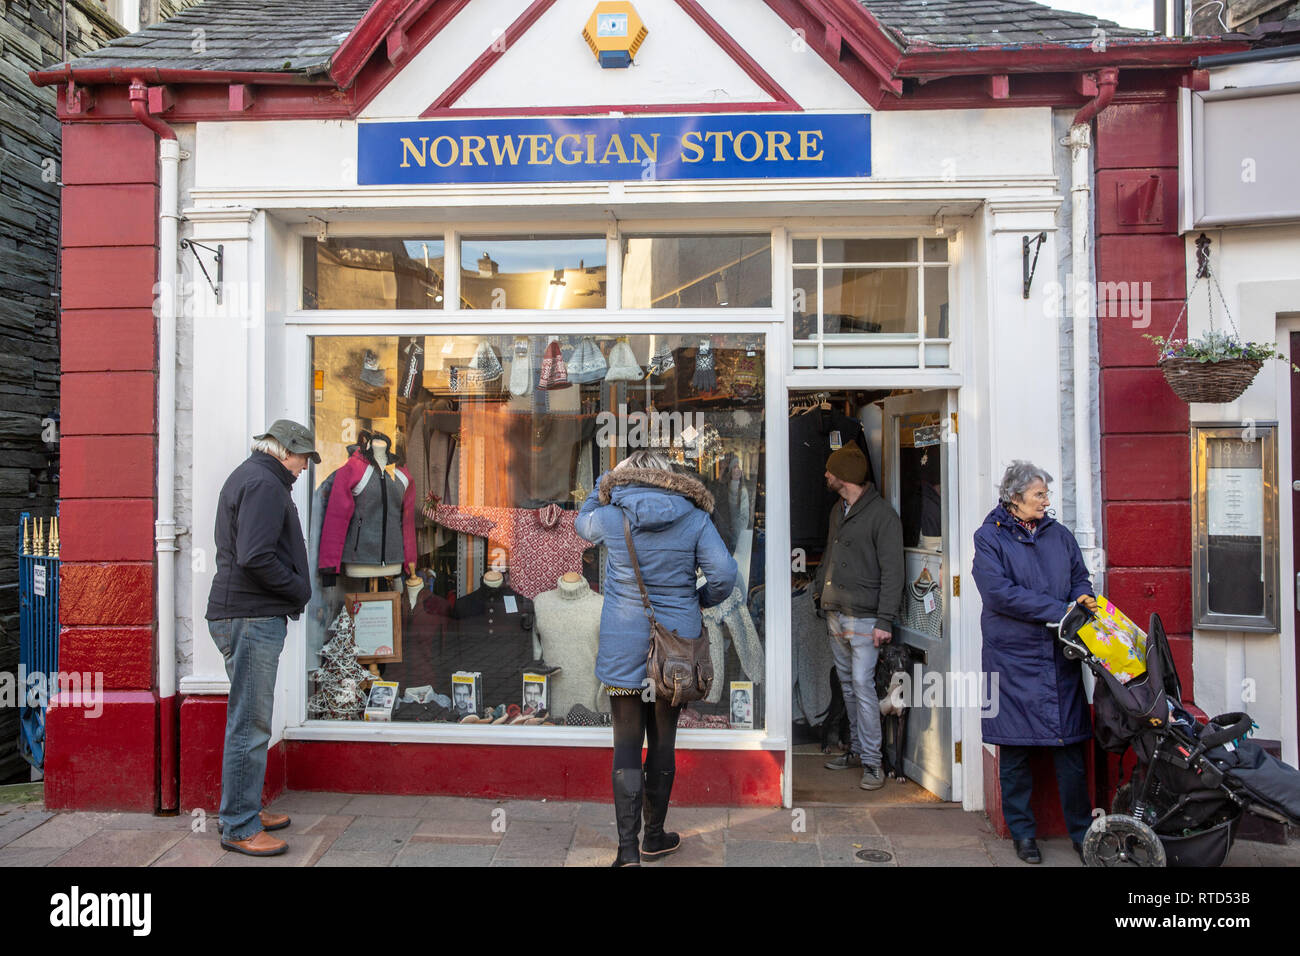 Magasin norvégien dans le centre-ville de Keswick, vente de vêtements de plein air d'hiver chaud,Keswick,Lake District,Cumbria, Angleterre Banque D'Images